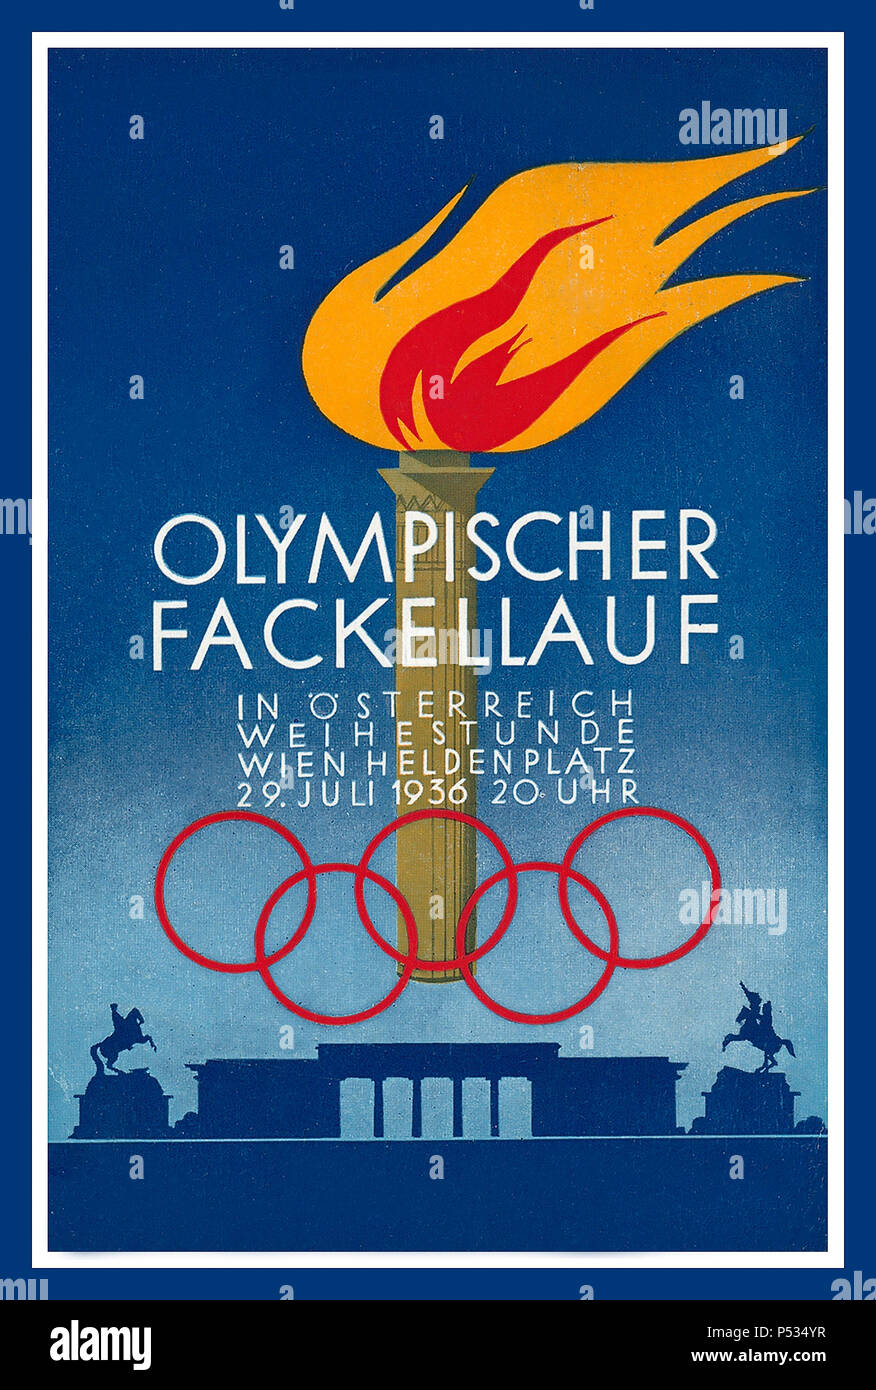 1936 Germania Austria Berlino Olimpiadi anelli olimpici Porta di Brandeburgo Cartolina commemorativa Poster torcia a fiamma 29 luglio OLYMPISCHER FACKELLAUF Helden Platz Vienna Foto Stock